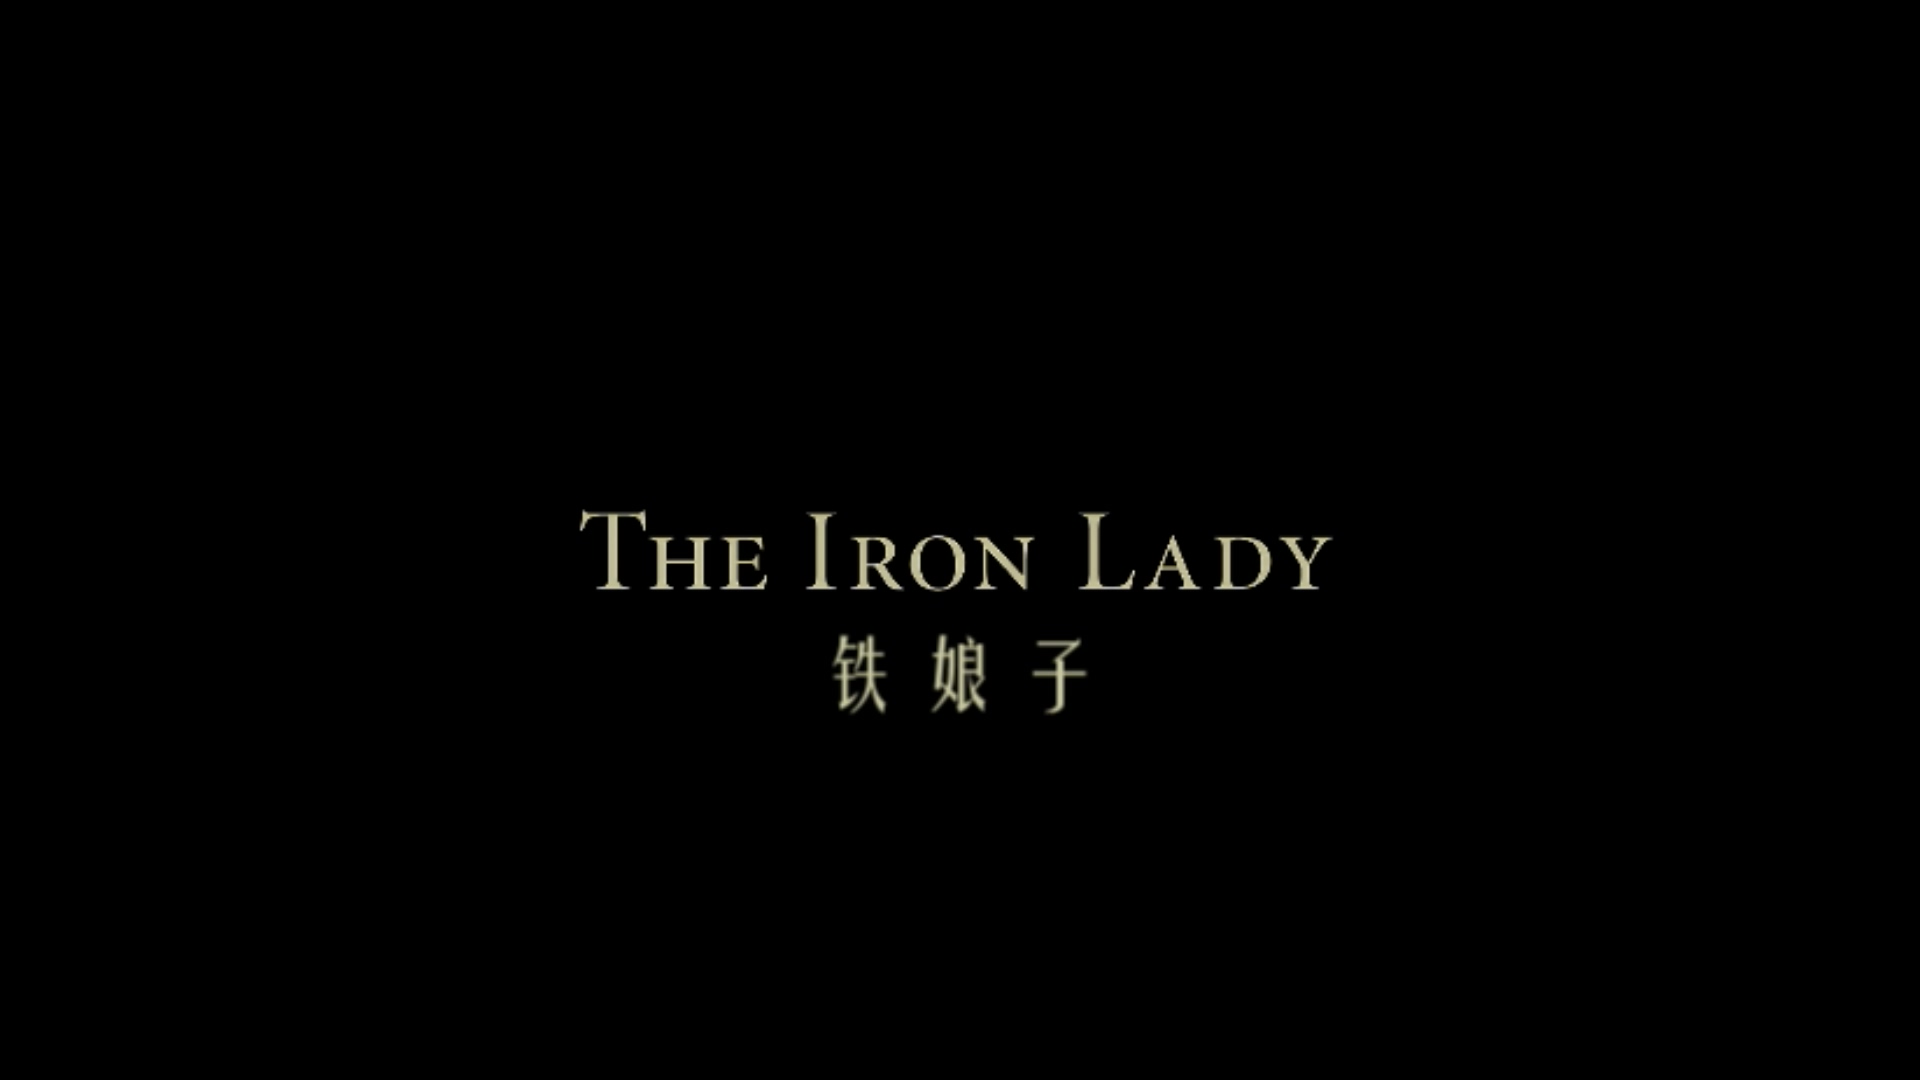 铁娘子/铁娘子：戴卓尔夫人传(港)/铁娘子：坚固柔情(台)【DIY繁简双语特效字幕】 The Iron Lady 2012 1080p Blu-Ray AVC DTS-HDMA 5.1-Kuriboh@OurBits [21.05 GB]-2.jpg